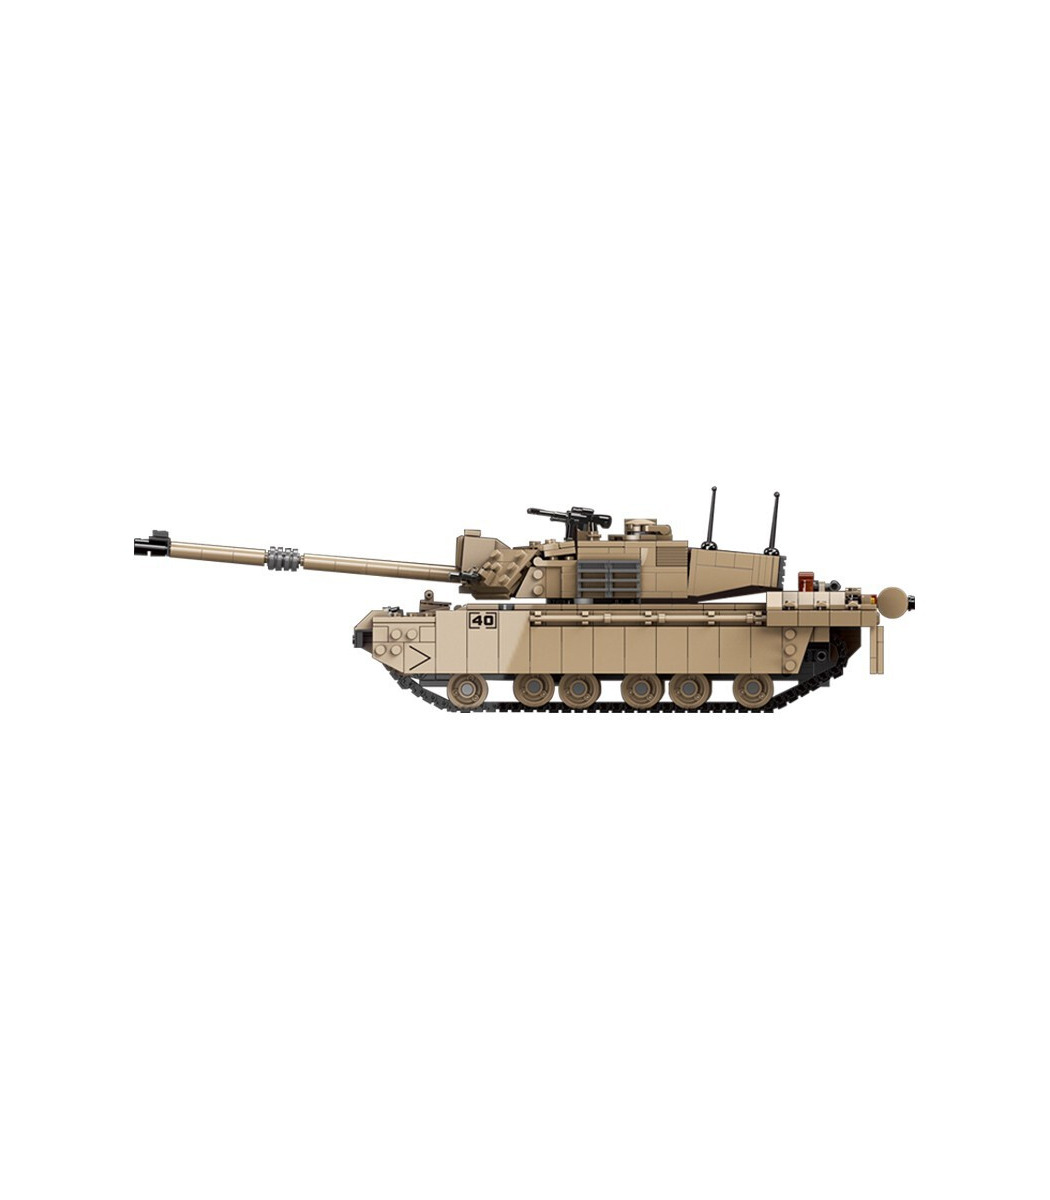 Challenger 2 - Main Battle Tank